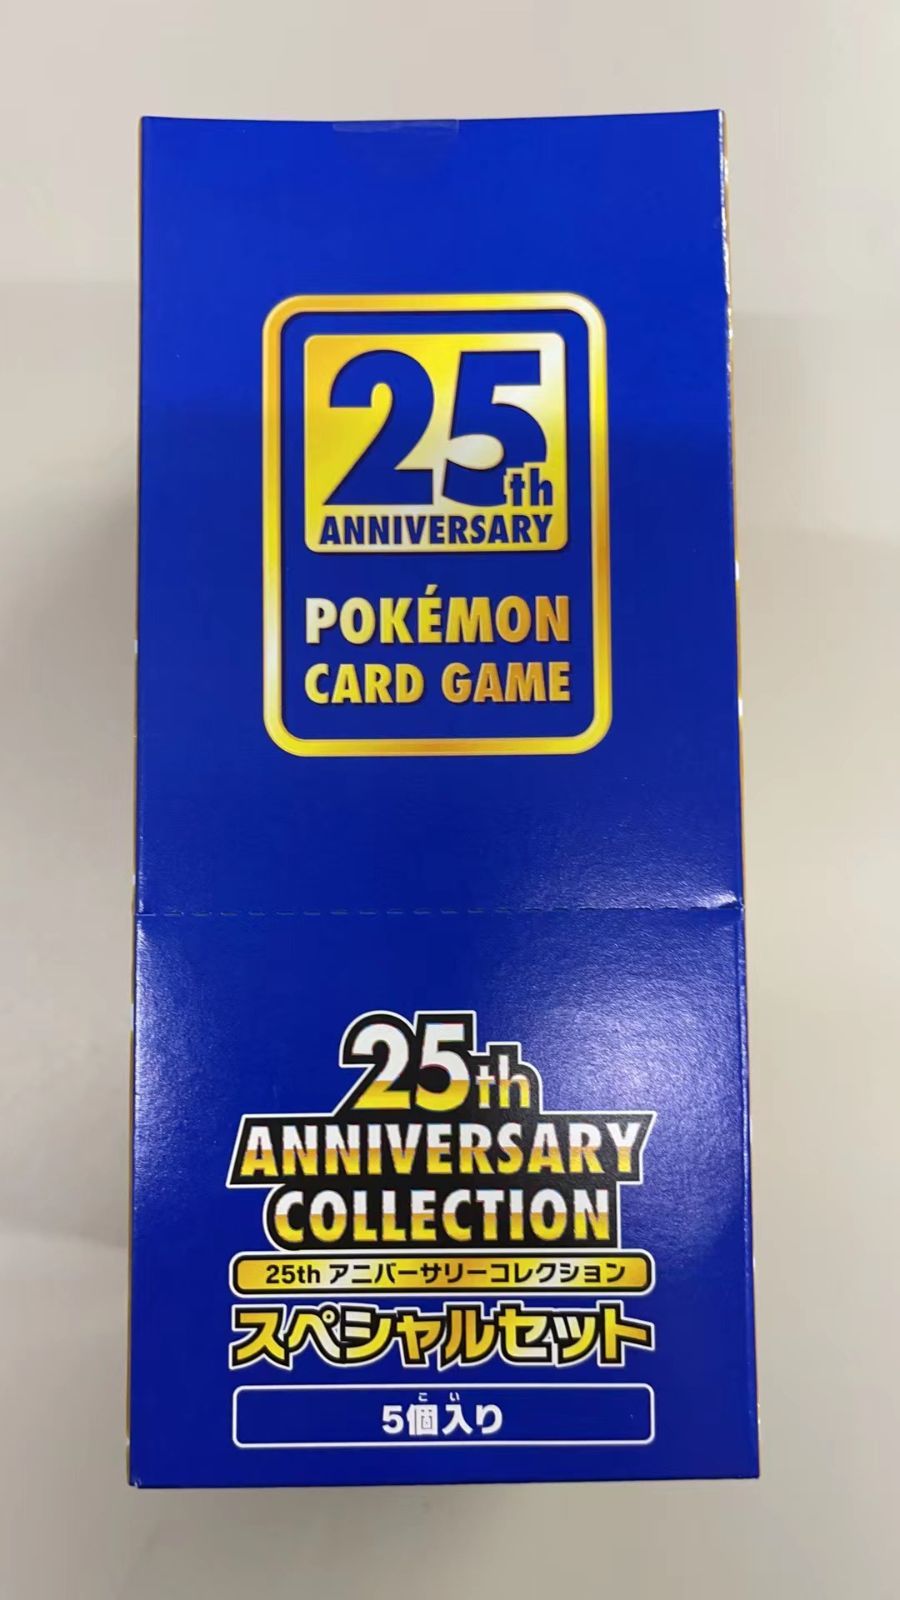 25th anniversary collection スペシャルセット 5個入 - メルカリ